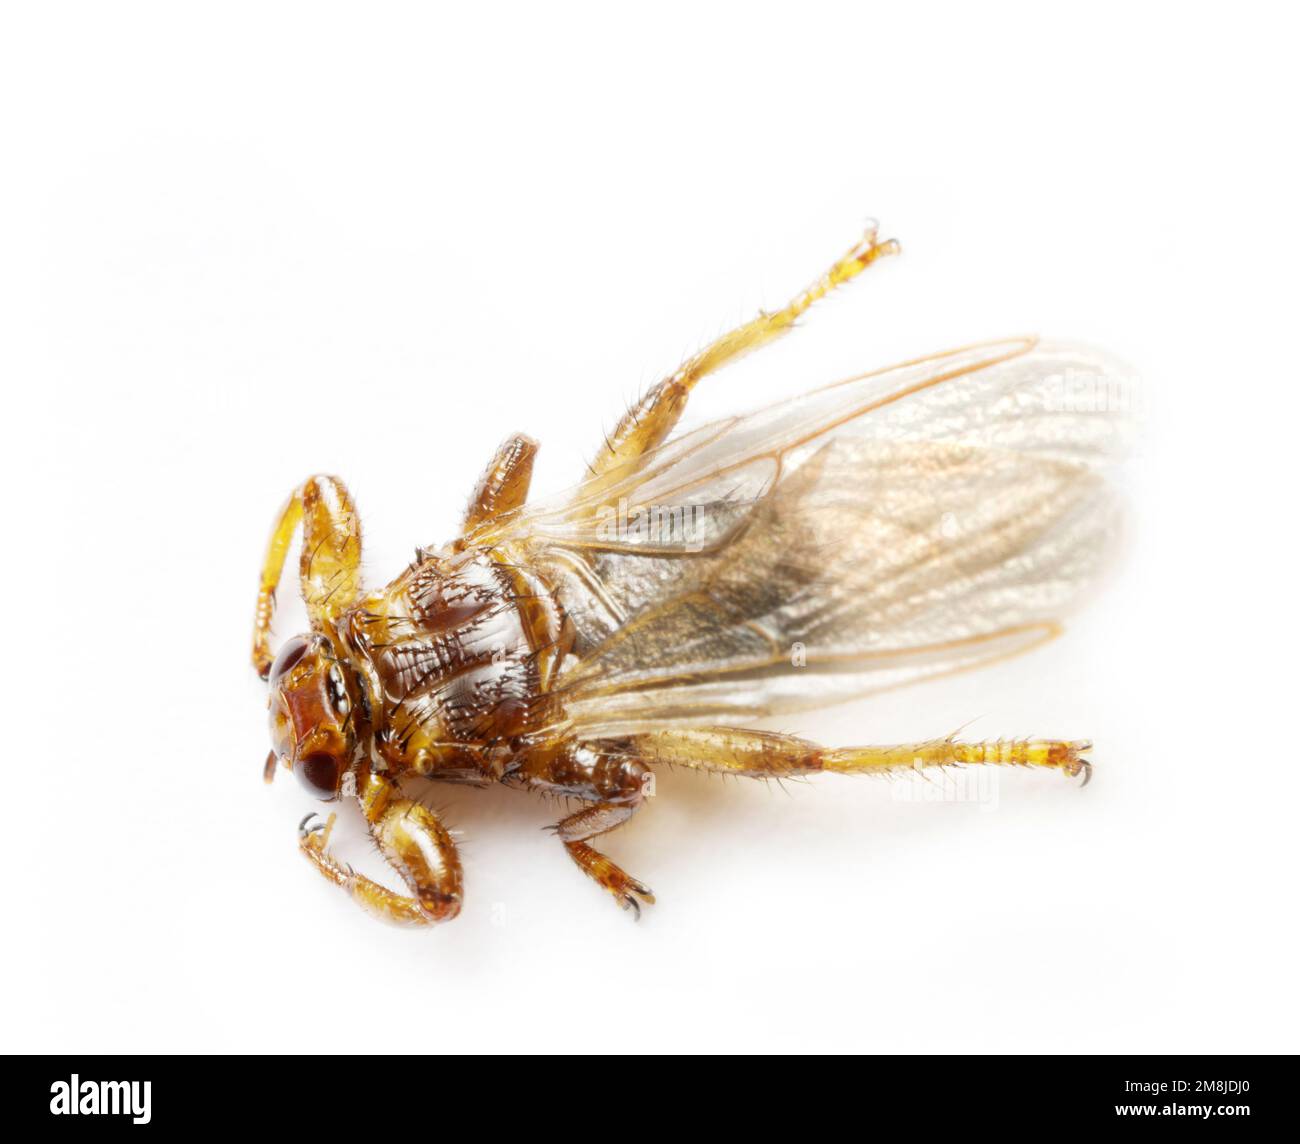 La mouche du cerf (Lipoptena cervi) oblige ectoparasites d'artiodactyles (orignal, cerf, sanglier, cheptel à cornes), peut attaquer l'homme et se nourrir de son sang, Banque D'Images